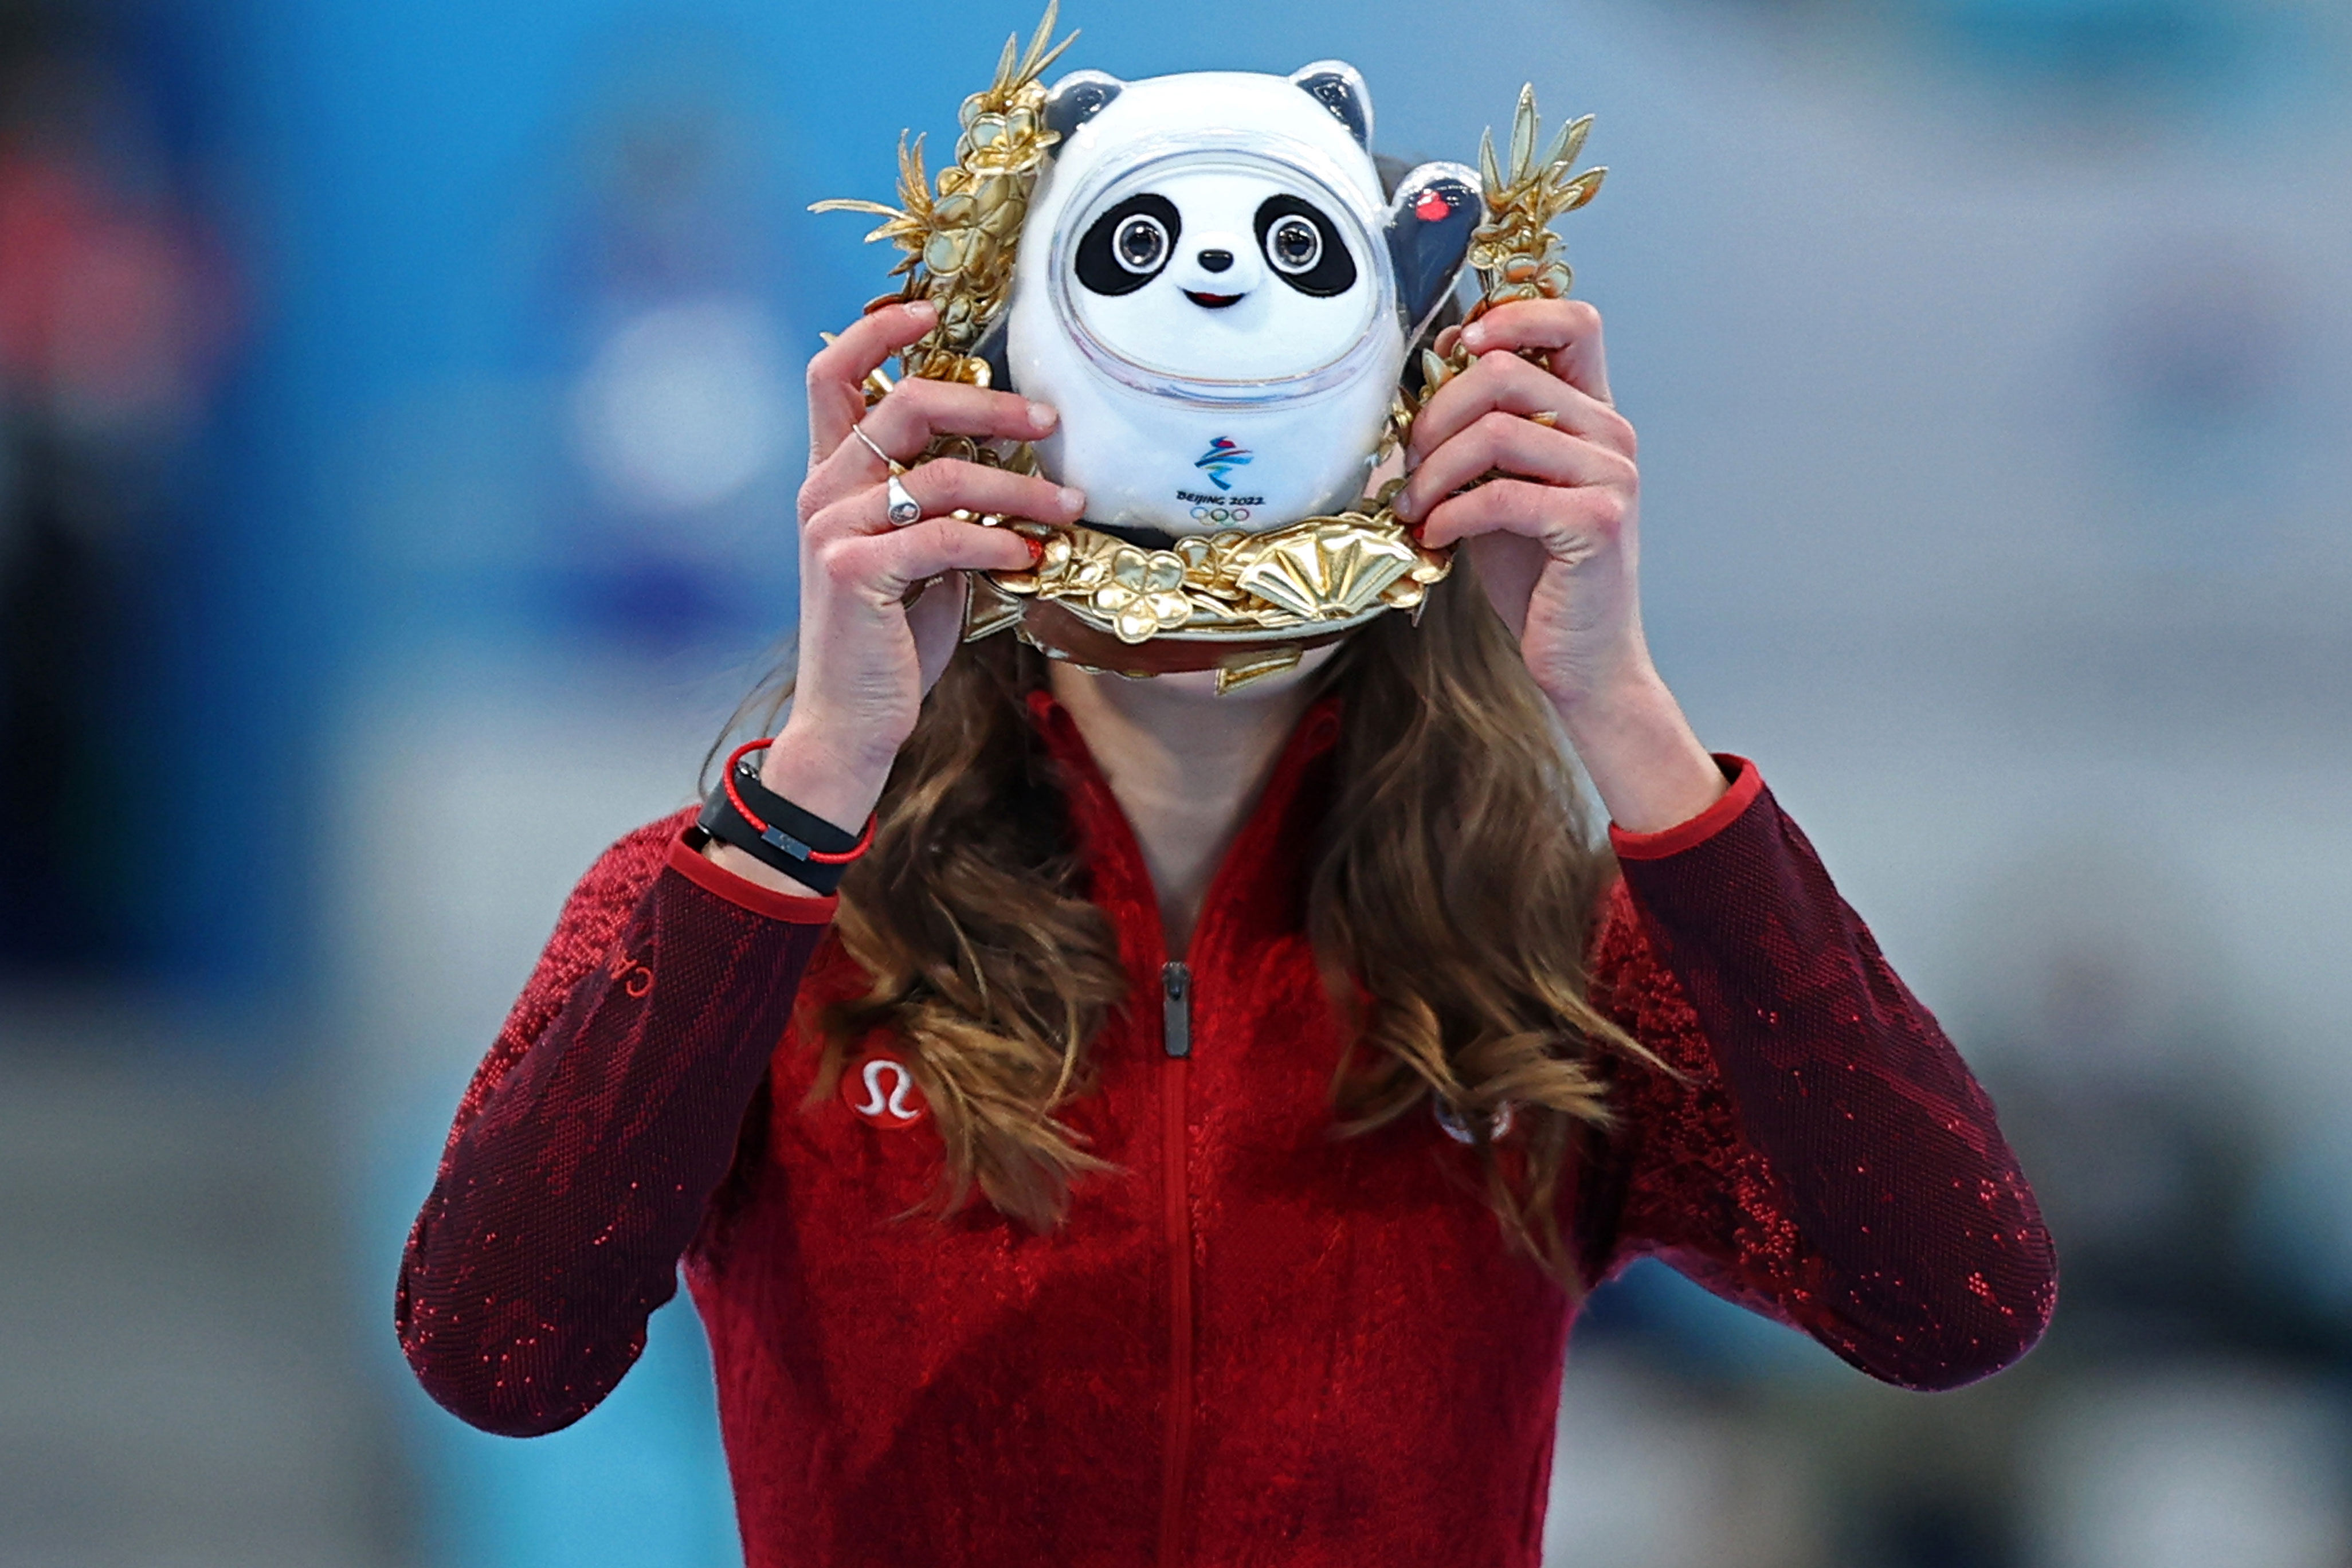 Bronze medalist Isabelle Weidemann of Canada holds up a miniature version of Olympic mascot Bing Dwen Dwen on Sunday.